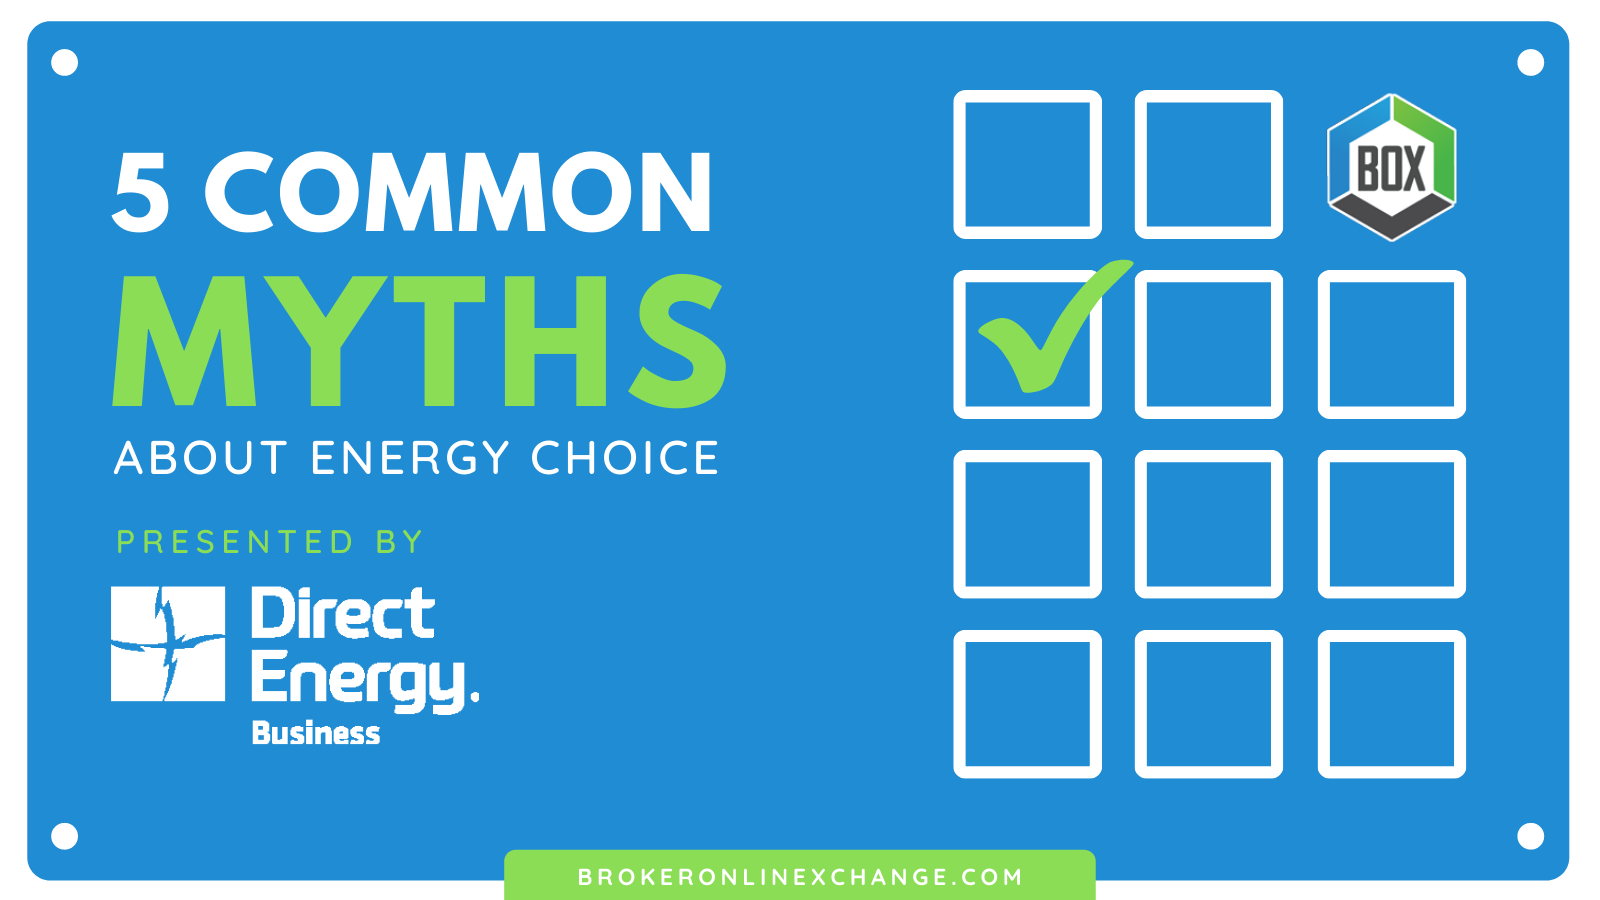 BOX Myths About Energy Choice